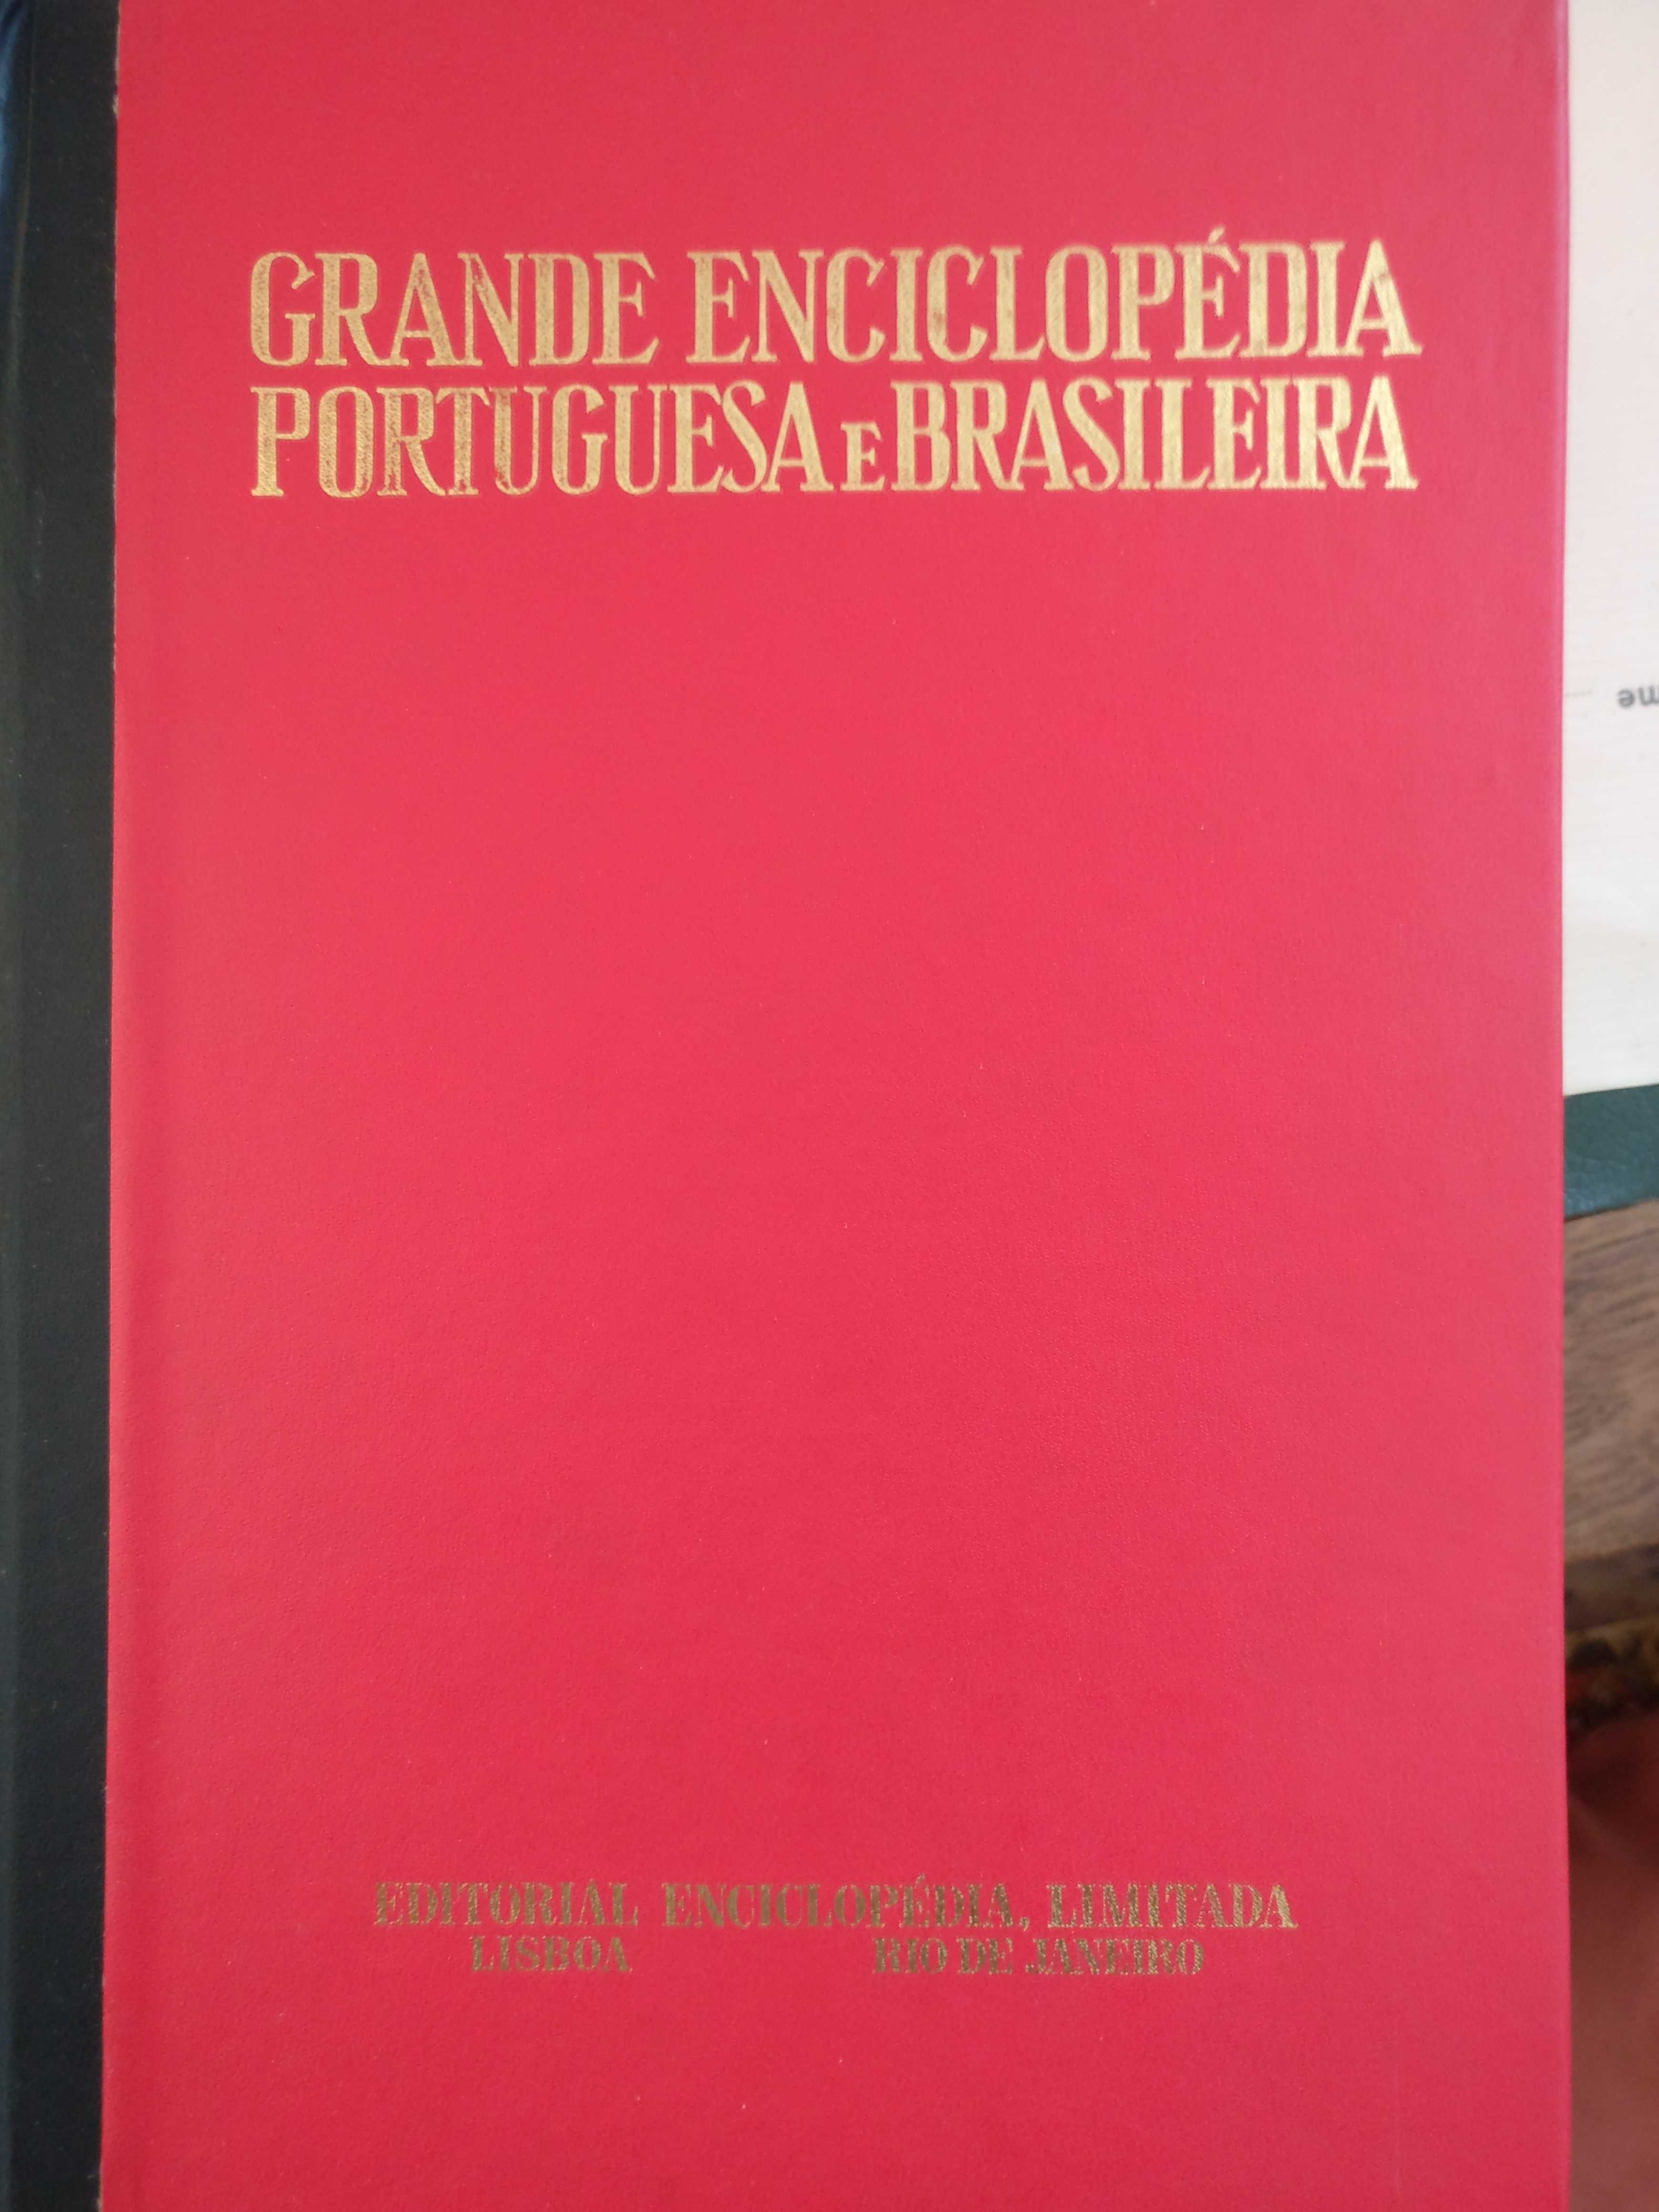 Grande Enciclopédia Portuguesa Brasileira 40 vols